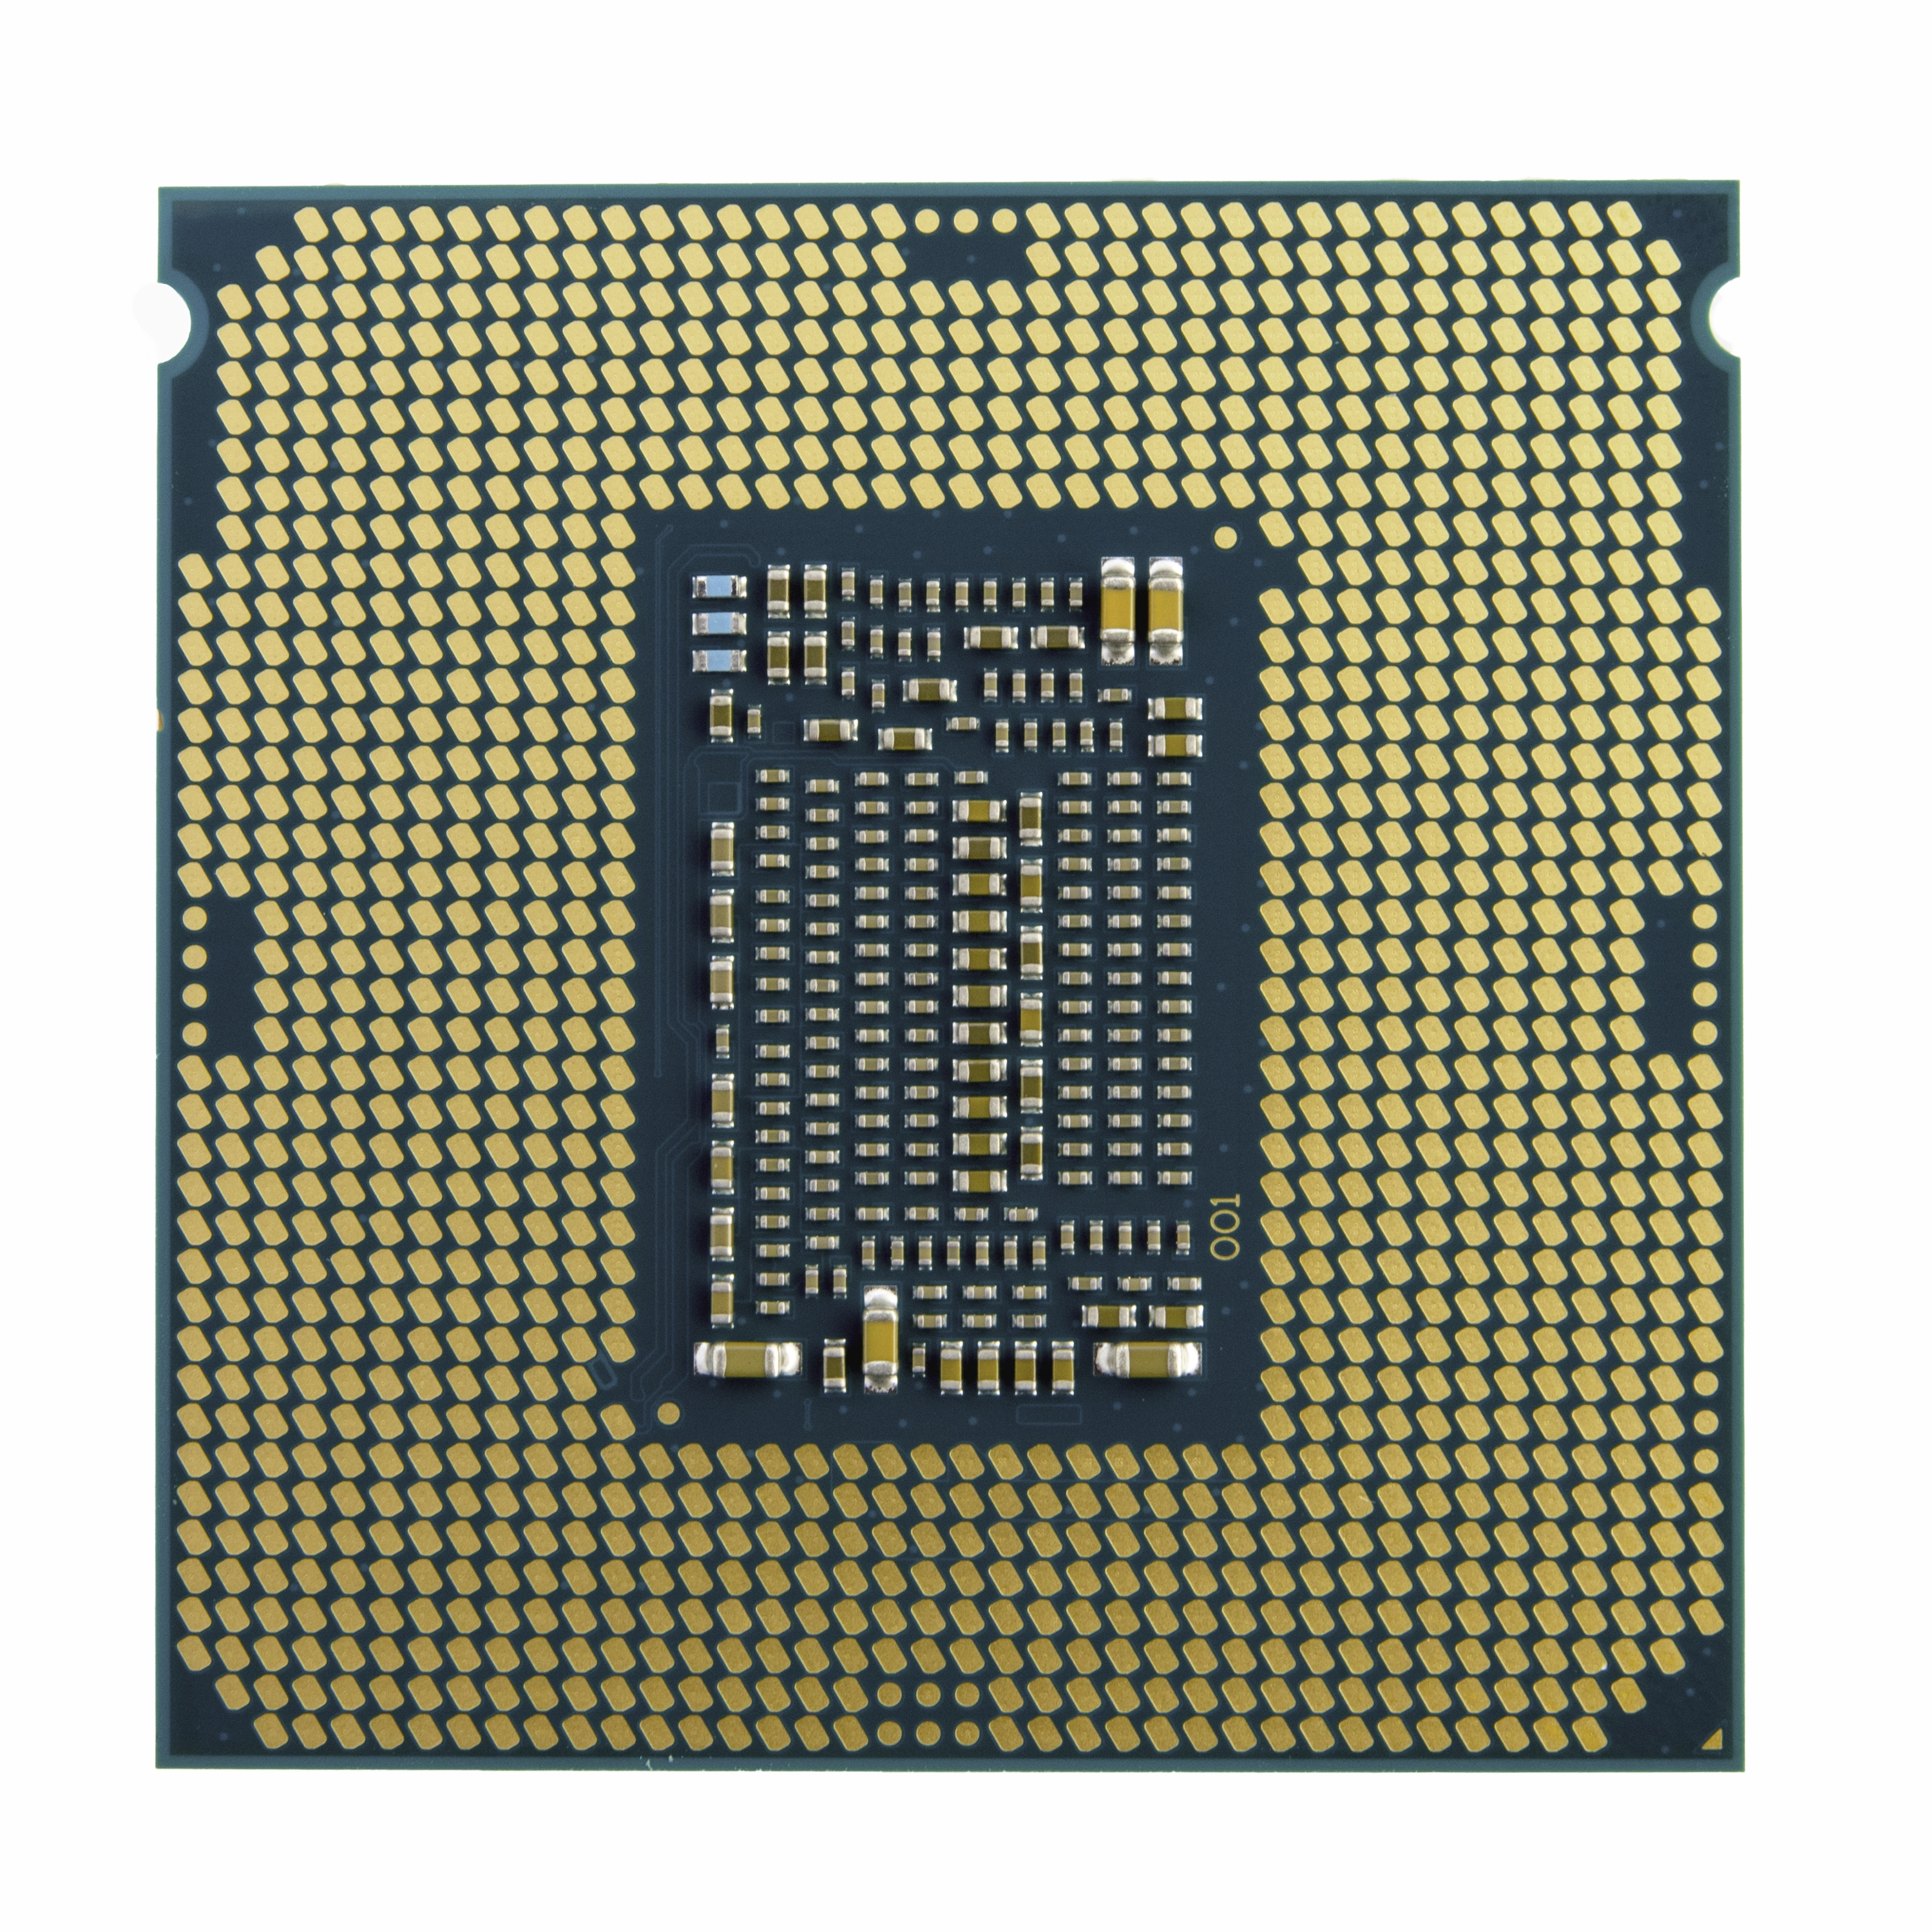 Intel Core i9-11900KF 8x 3.5 GHz So. 1200 Tray